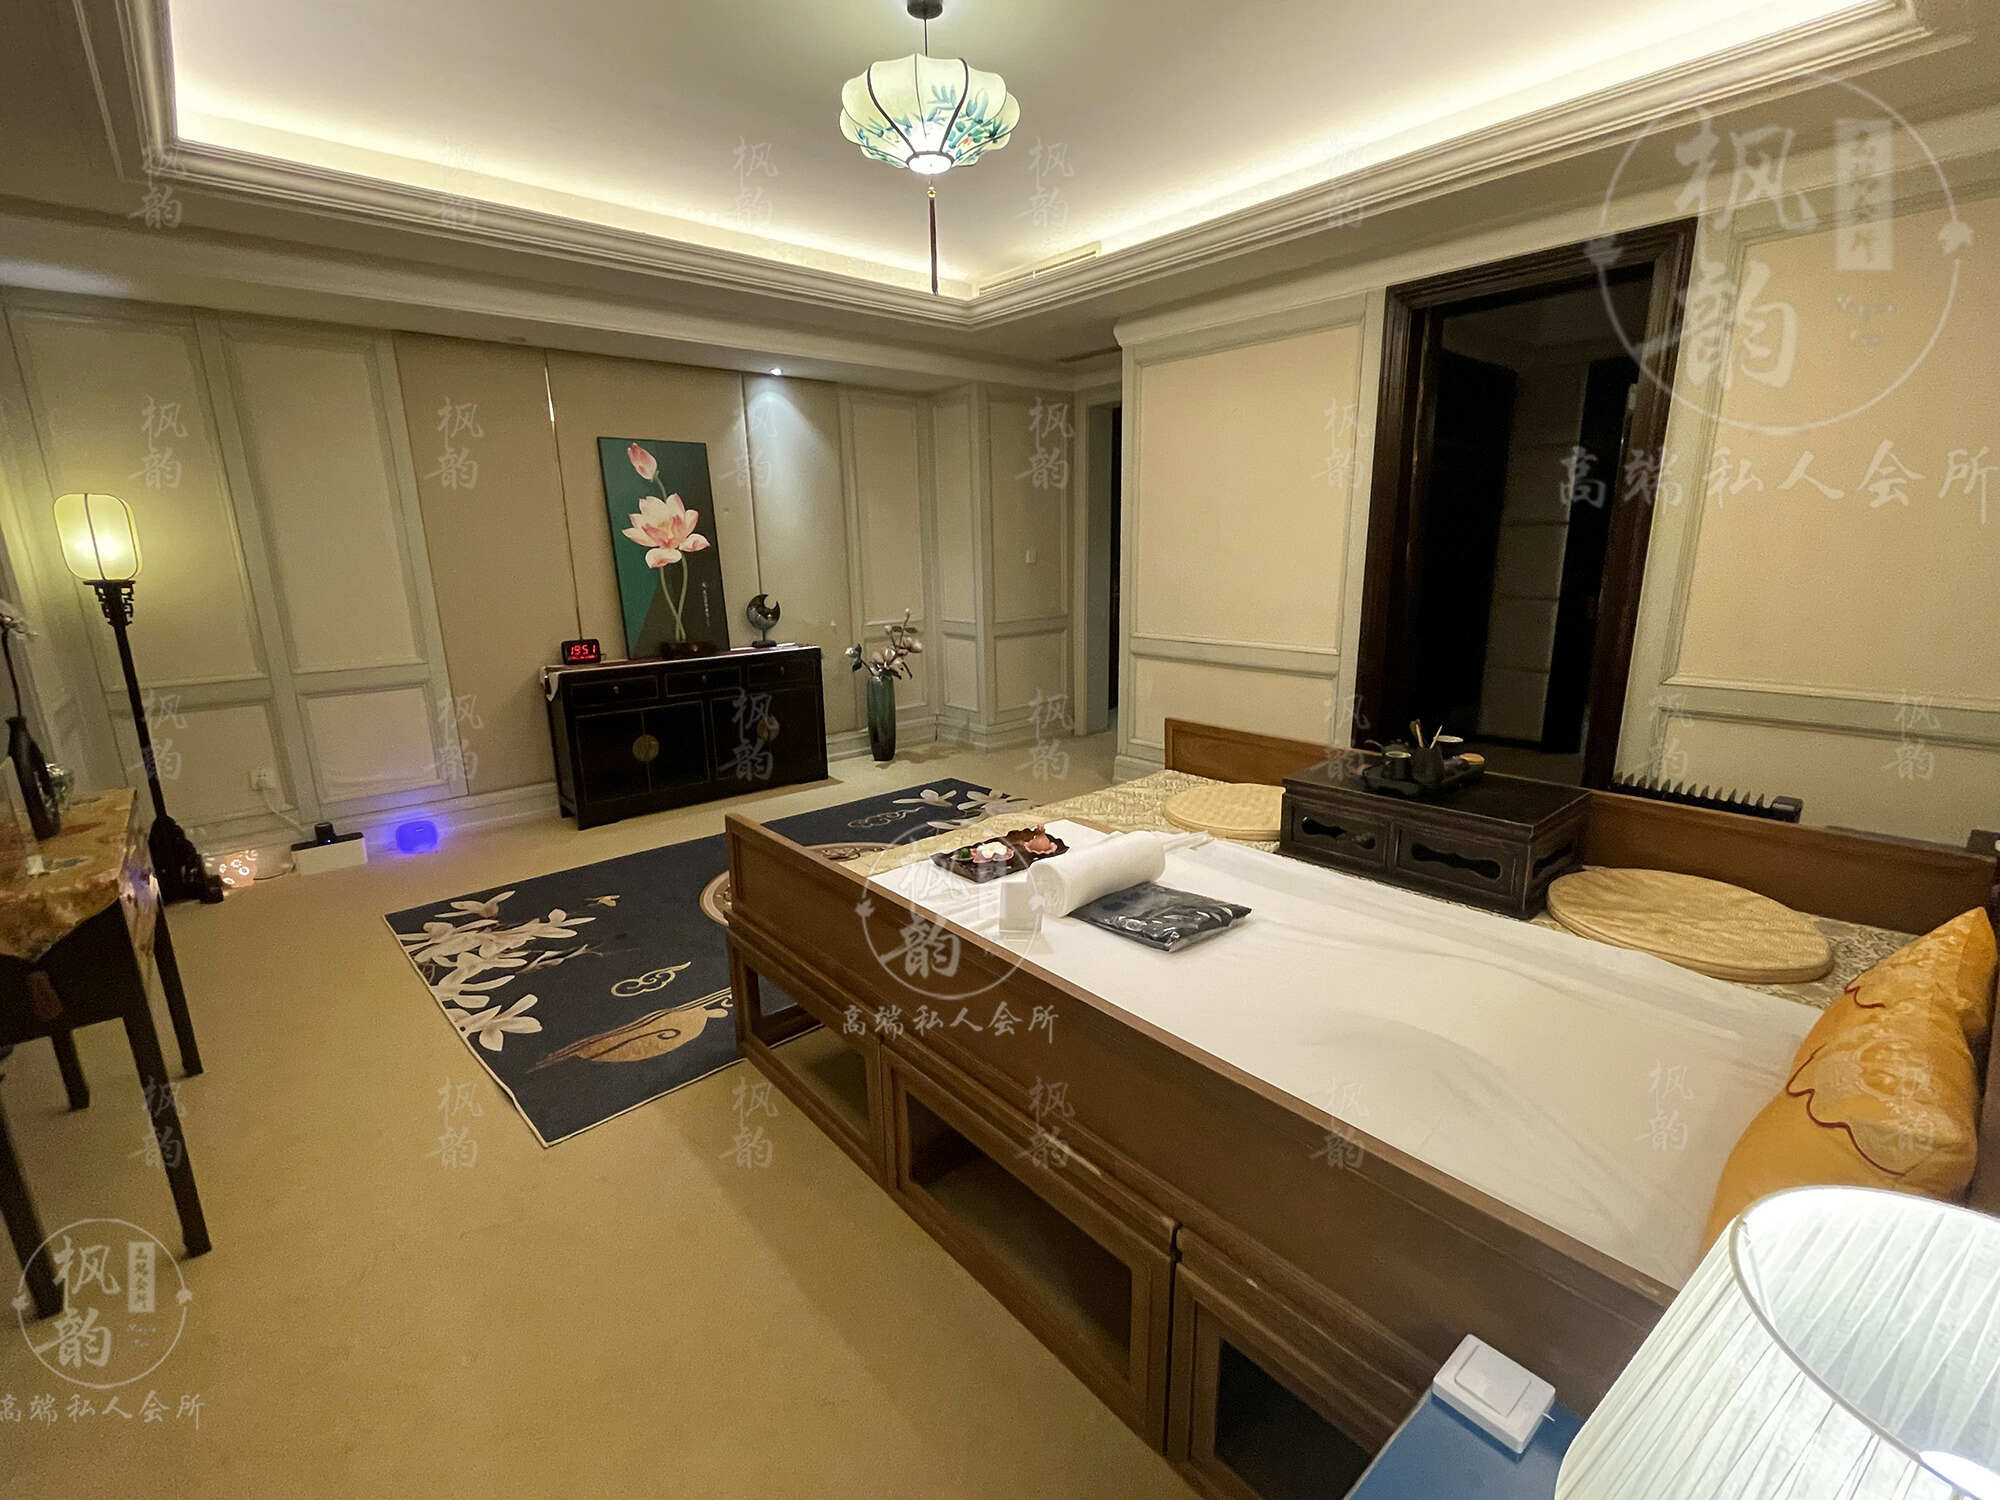 扬州天津渔阳鼓楼人气优选沐足会馆房间也很干净，舒适的spa体验